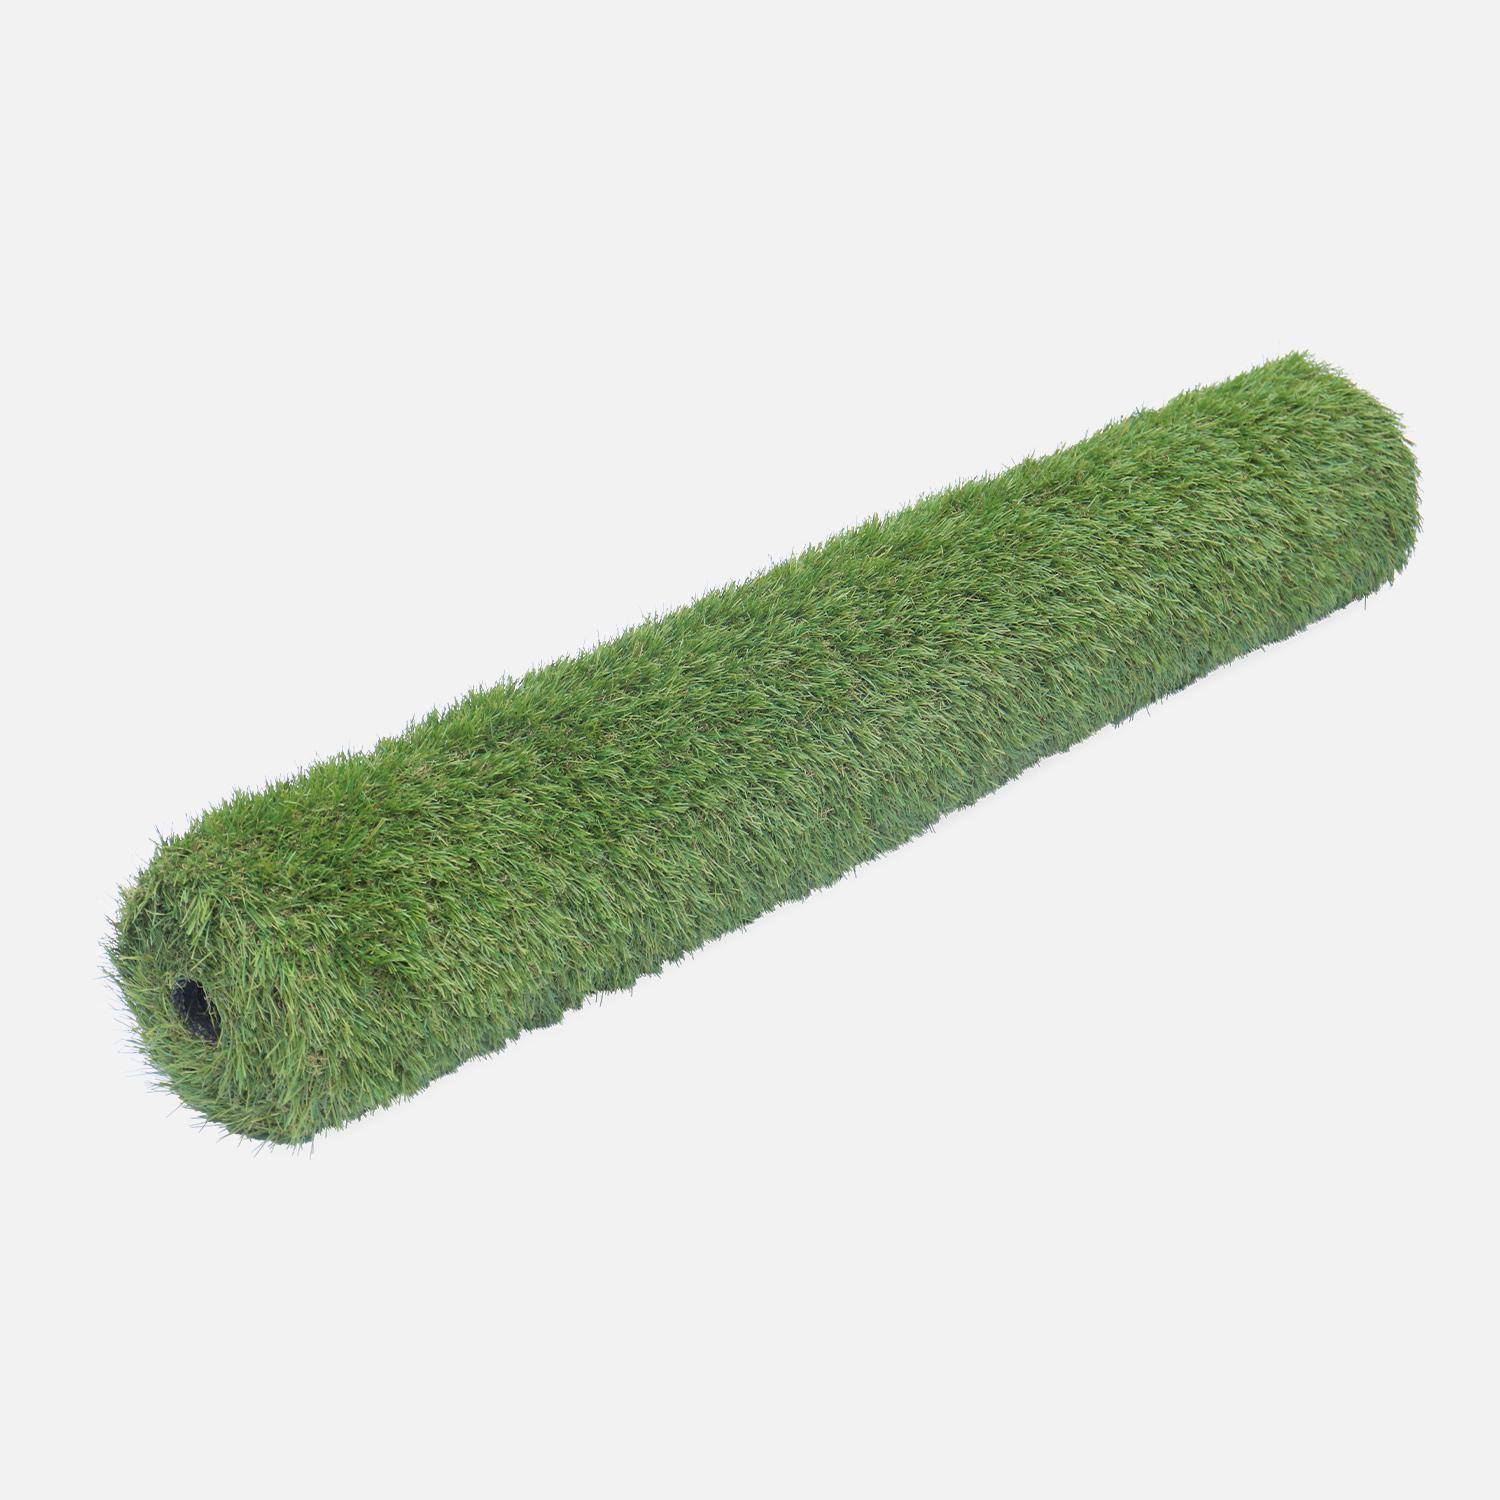 Synthetisch gras 1x4m, dragen, smaragdgroen, kaki groen en beige strengen, 35mm,sweeek,Photo2